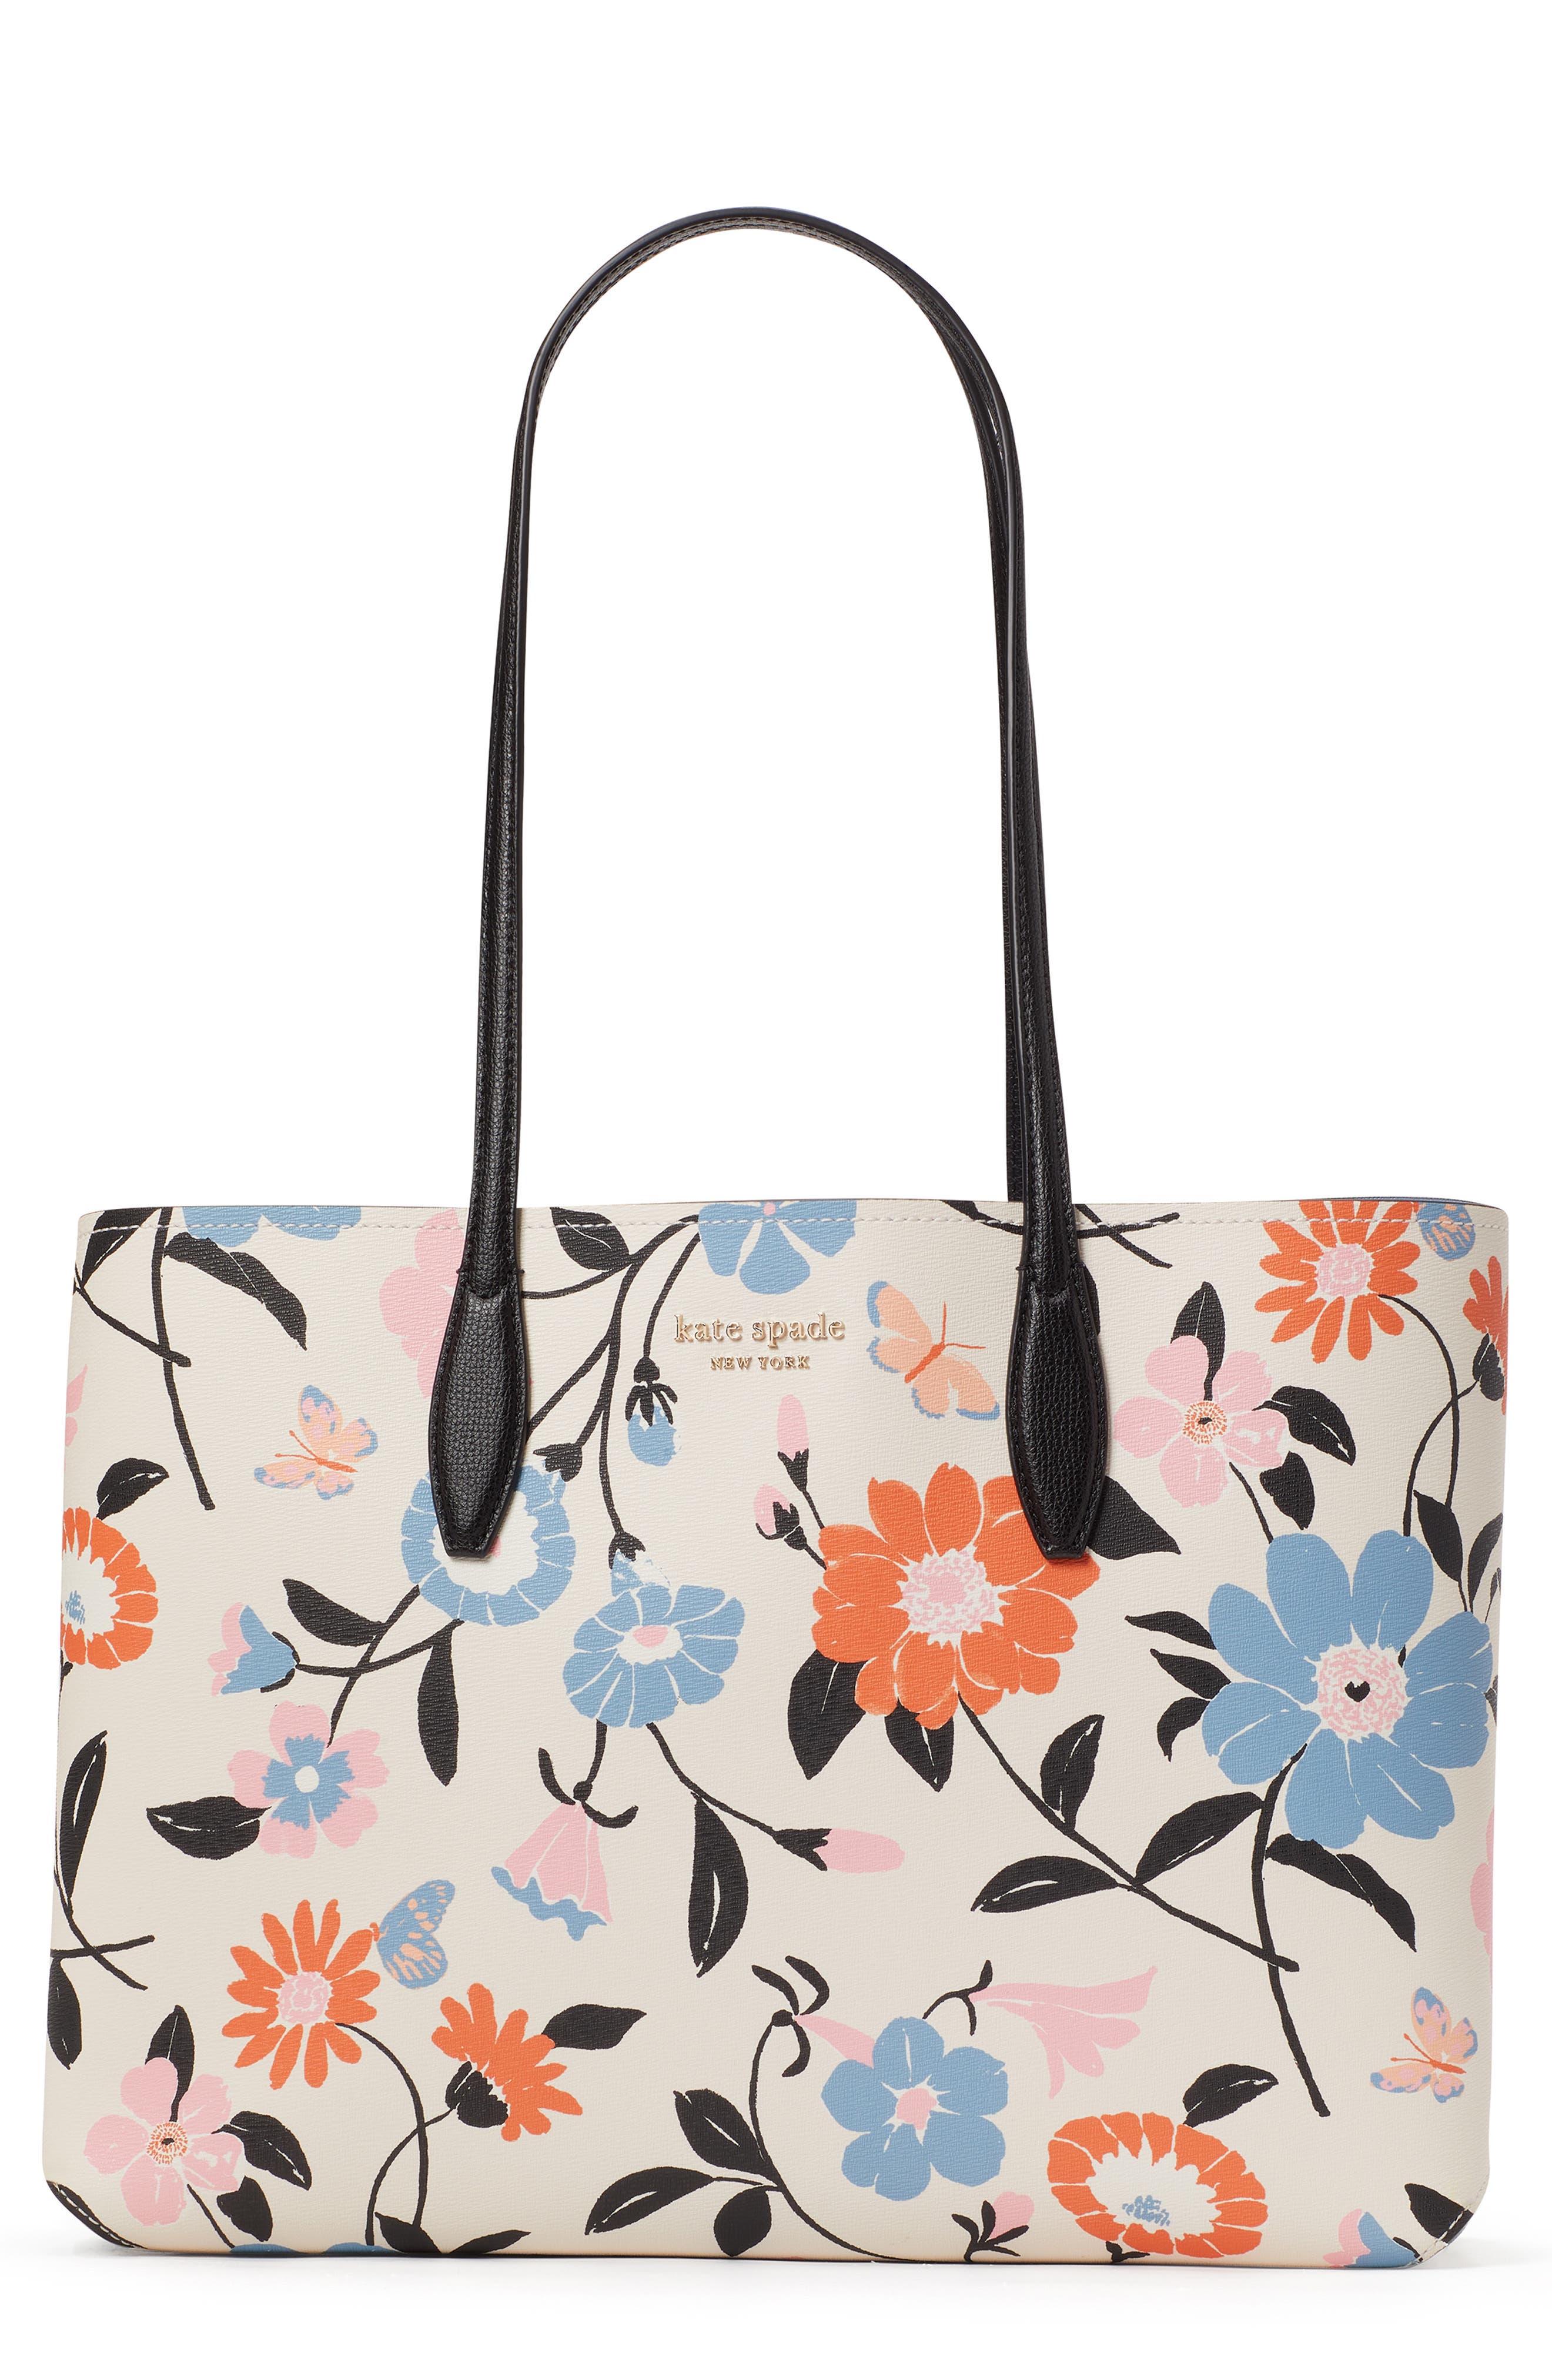 Jacksome Flowers Pattern Women Shoulder Bags Tote Bag Handbags Ladies Satchel Tote Bags Custom Zipper Canvas Bags 